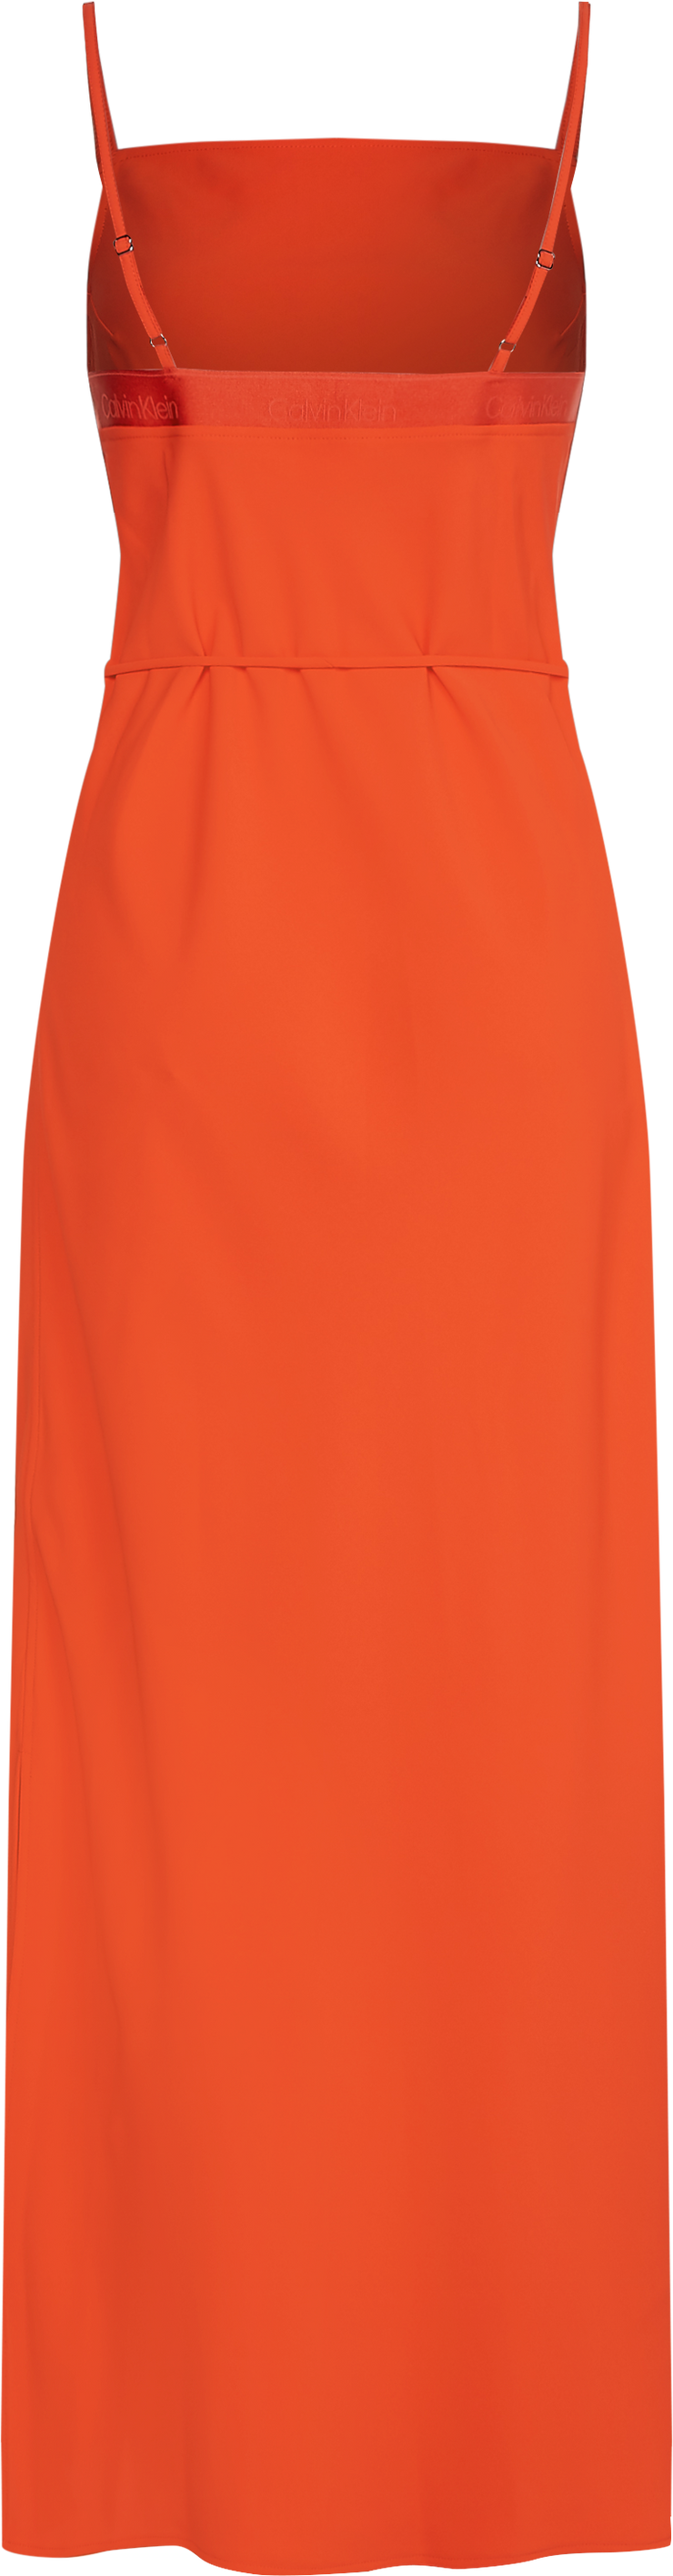 Orange Cami Dress